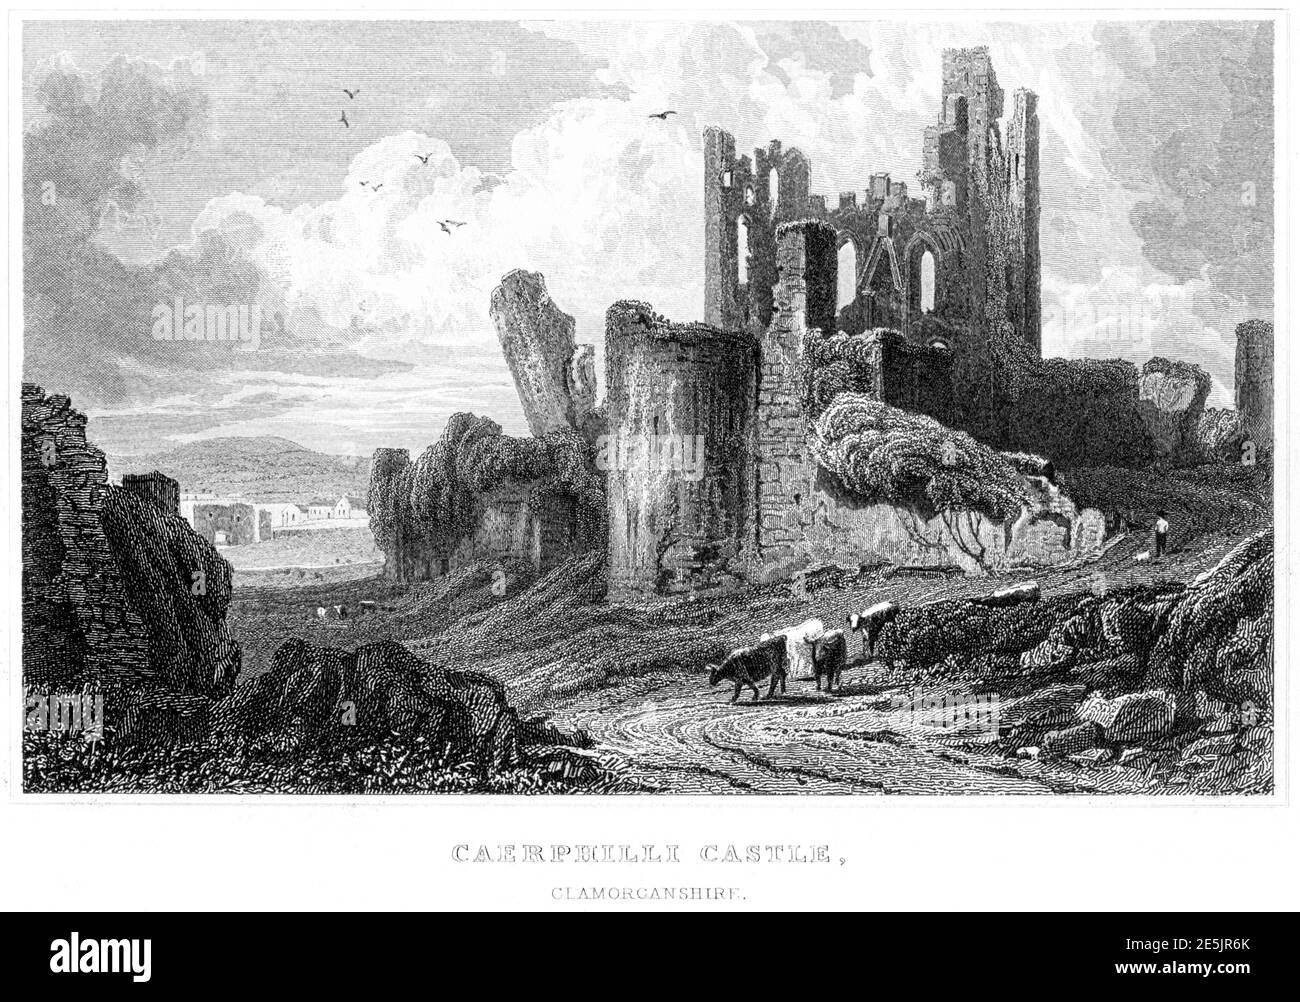 Incisione del castello di Caerphilli (Caerphilly), Glamourganshire ha fatto la scansione ad alta risoluzione di un libro pubblicato nel 1854. Creduto esente da copyright. Foto Stock